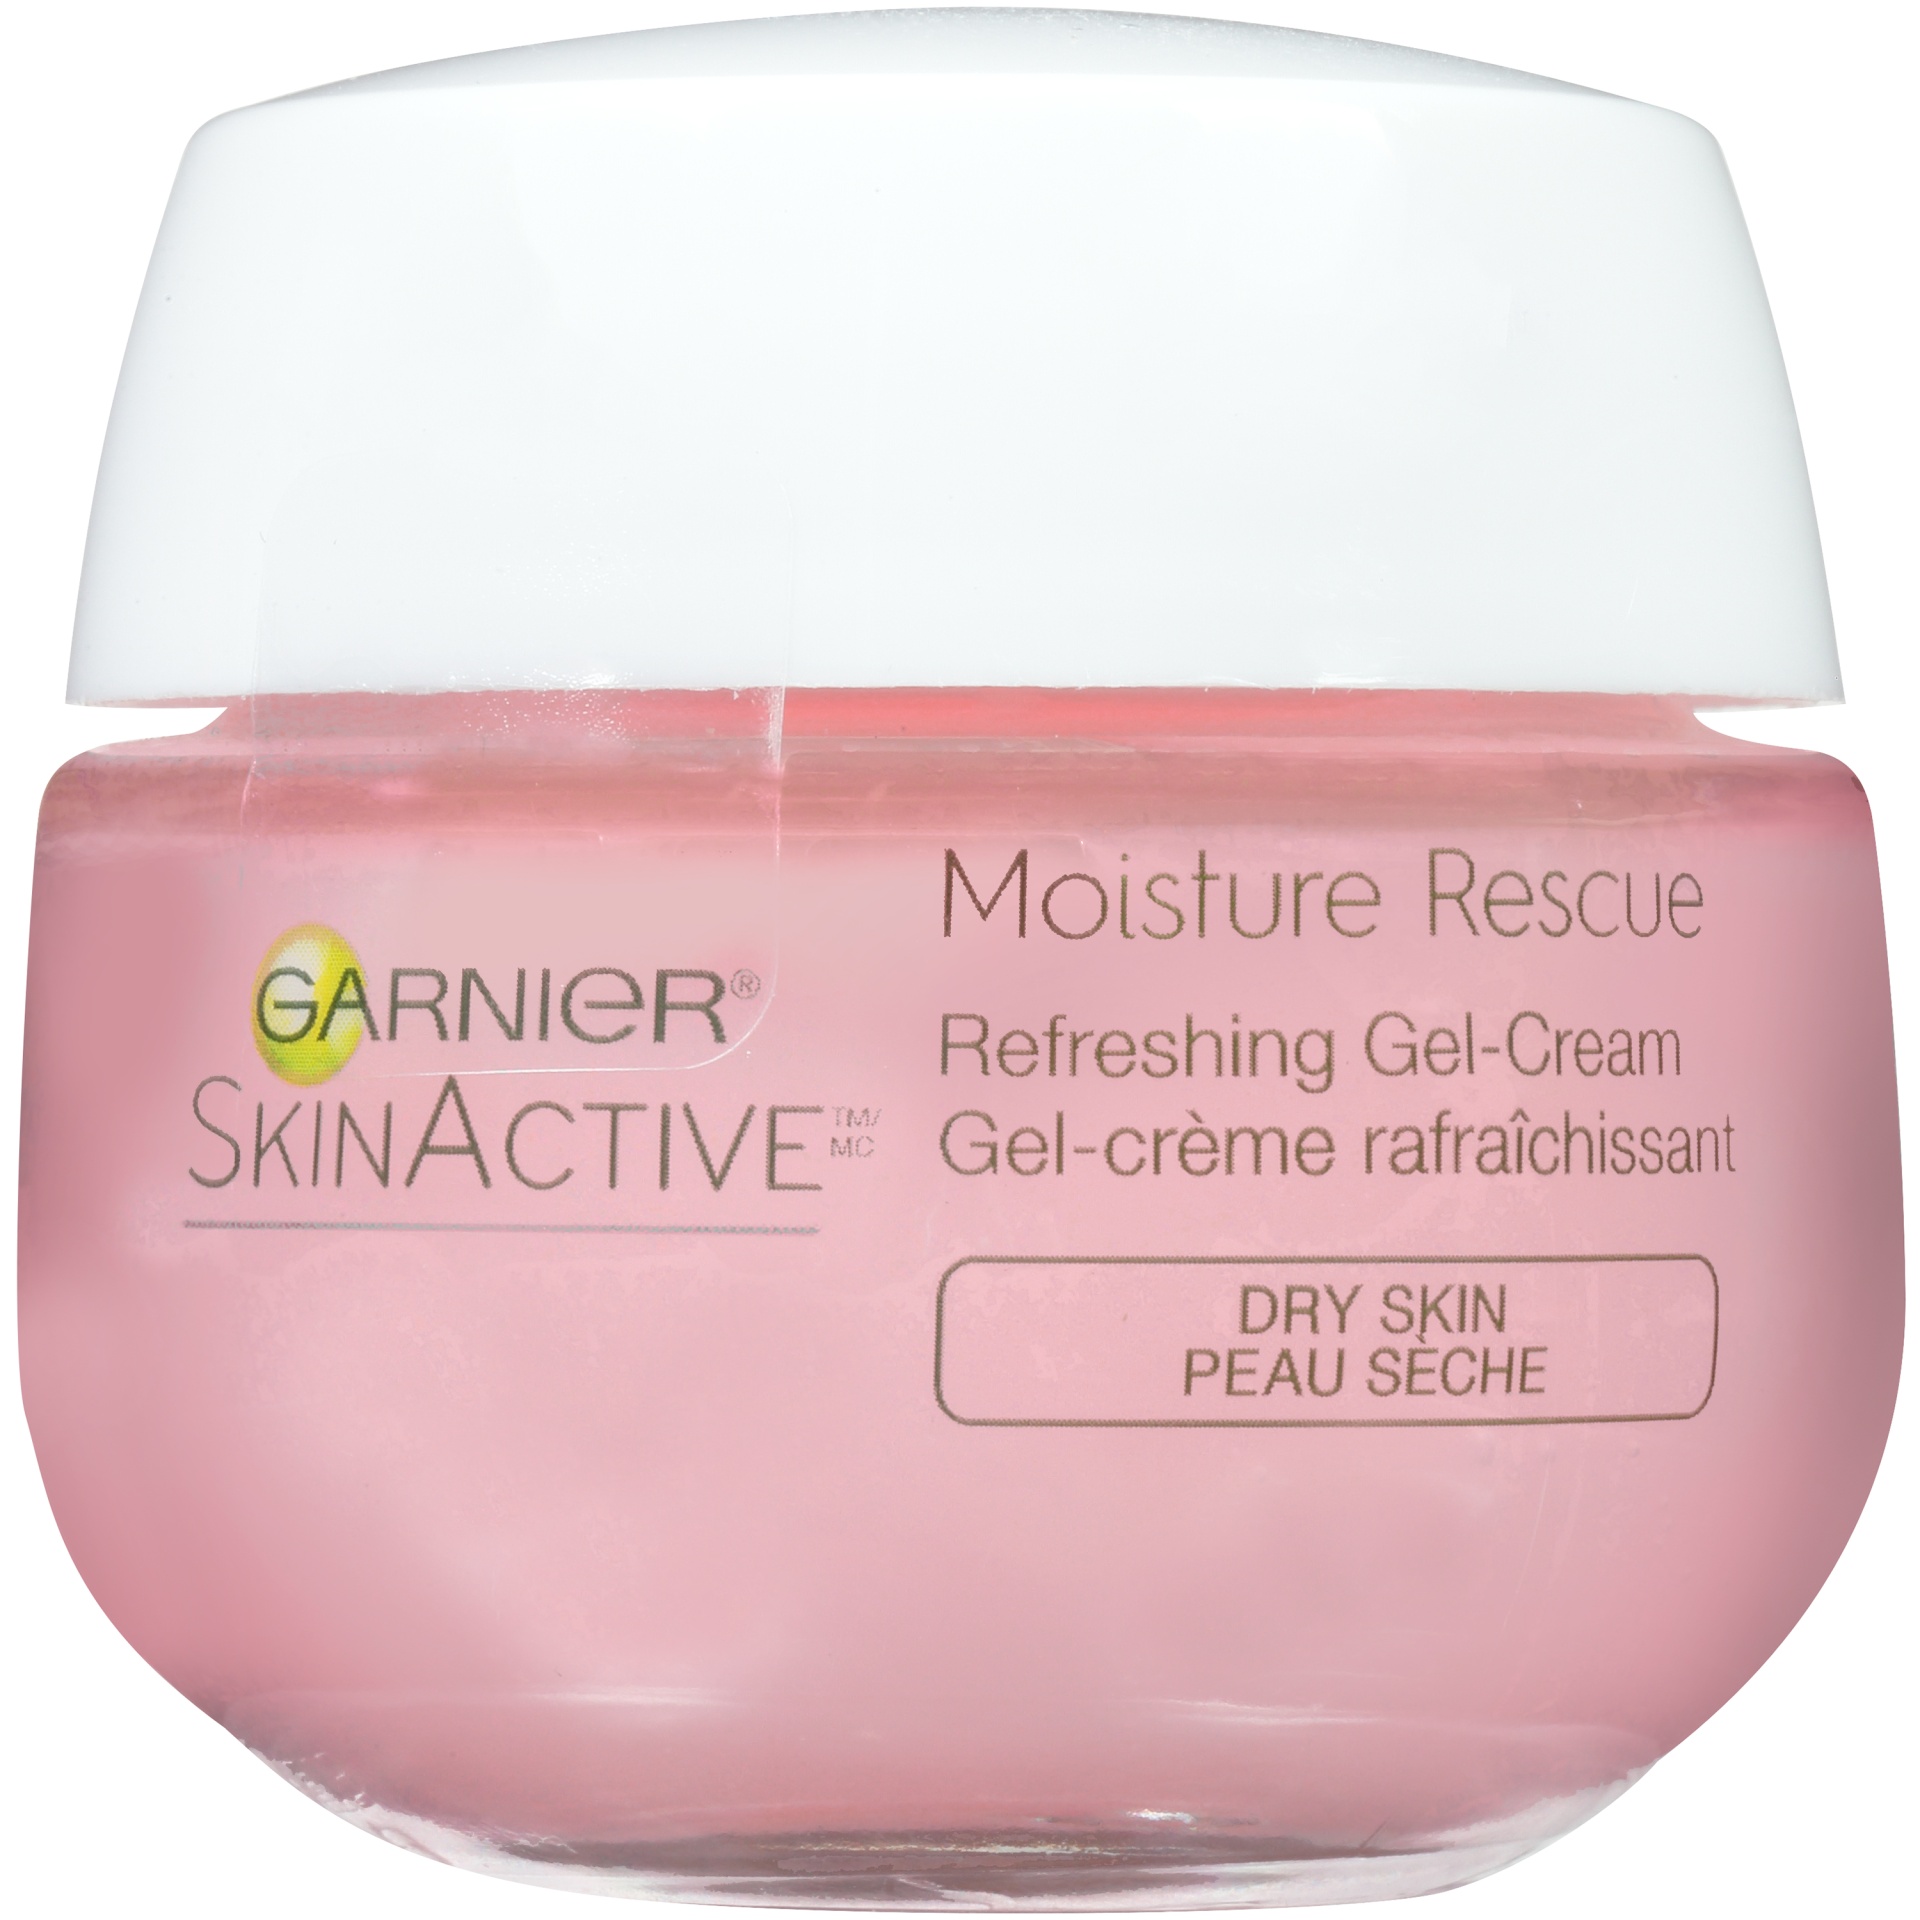 slide 2 of 8, Garnier SkinActive Moisture Rescue Refreshing Gel-Cream for Dry Skin, 1.7 oz